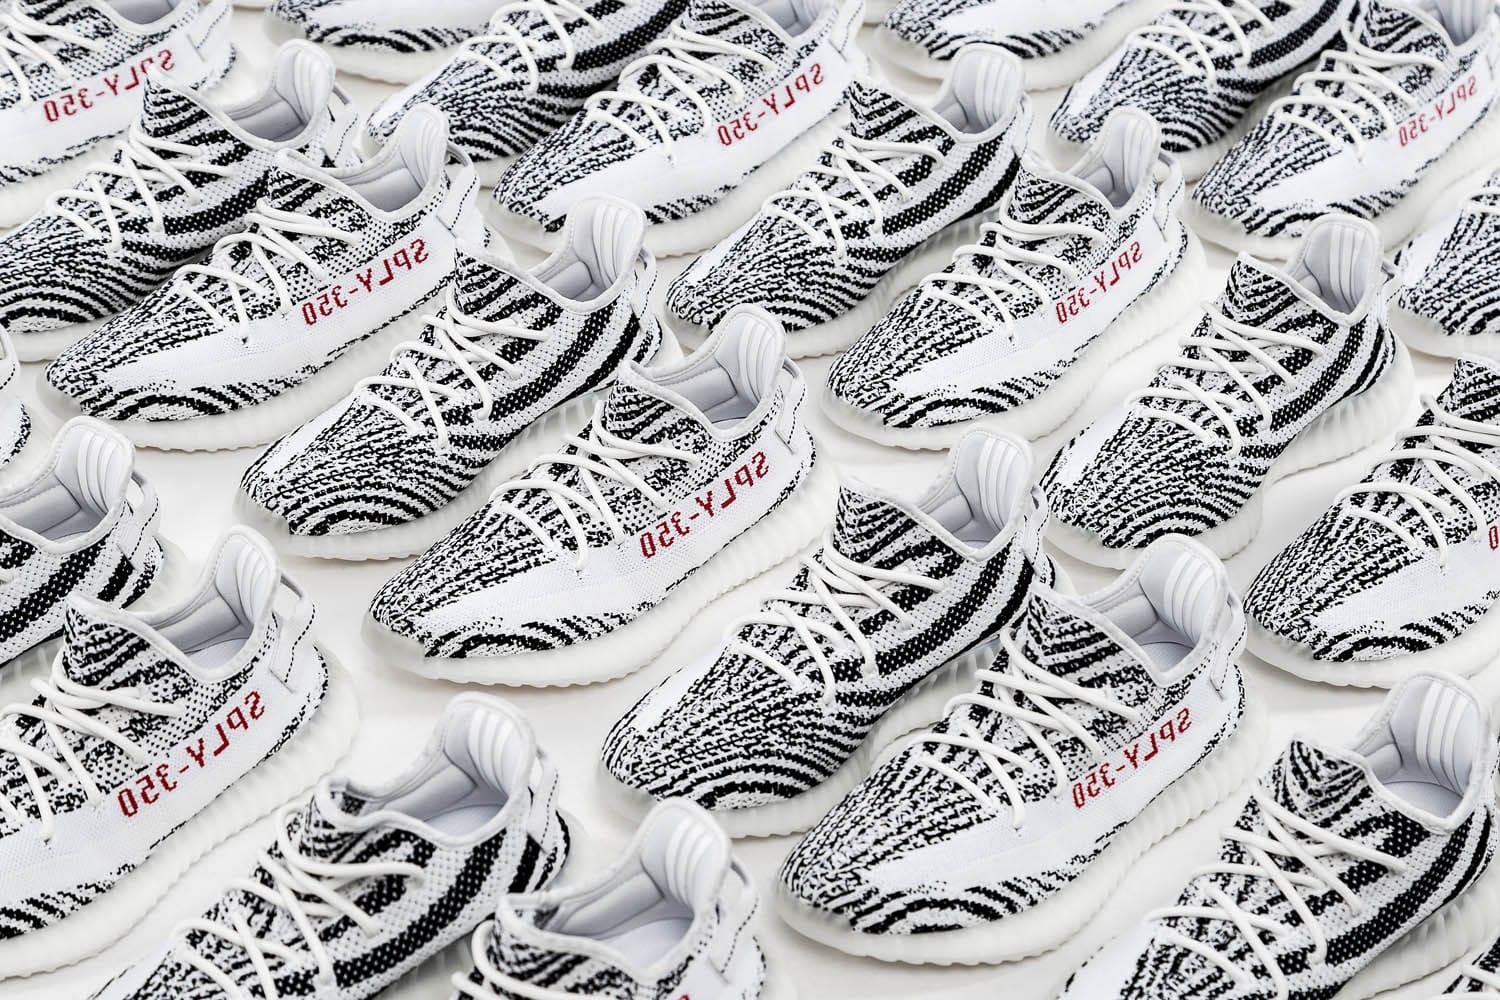 yeezy zebra adidas store